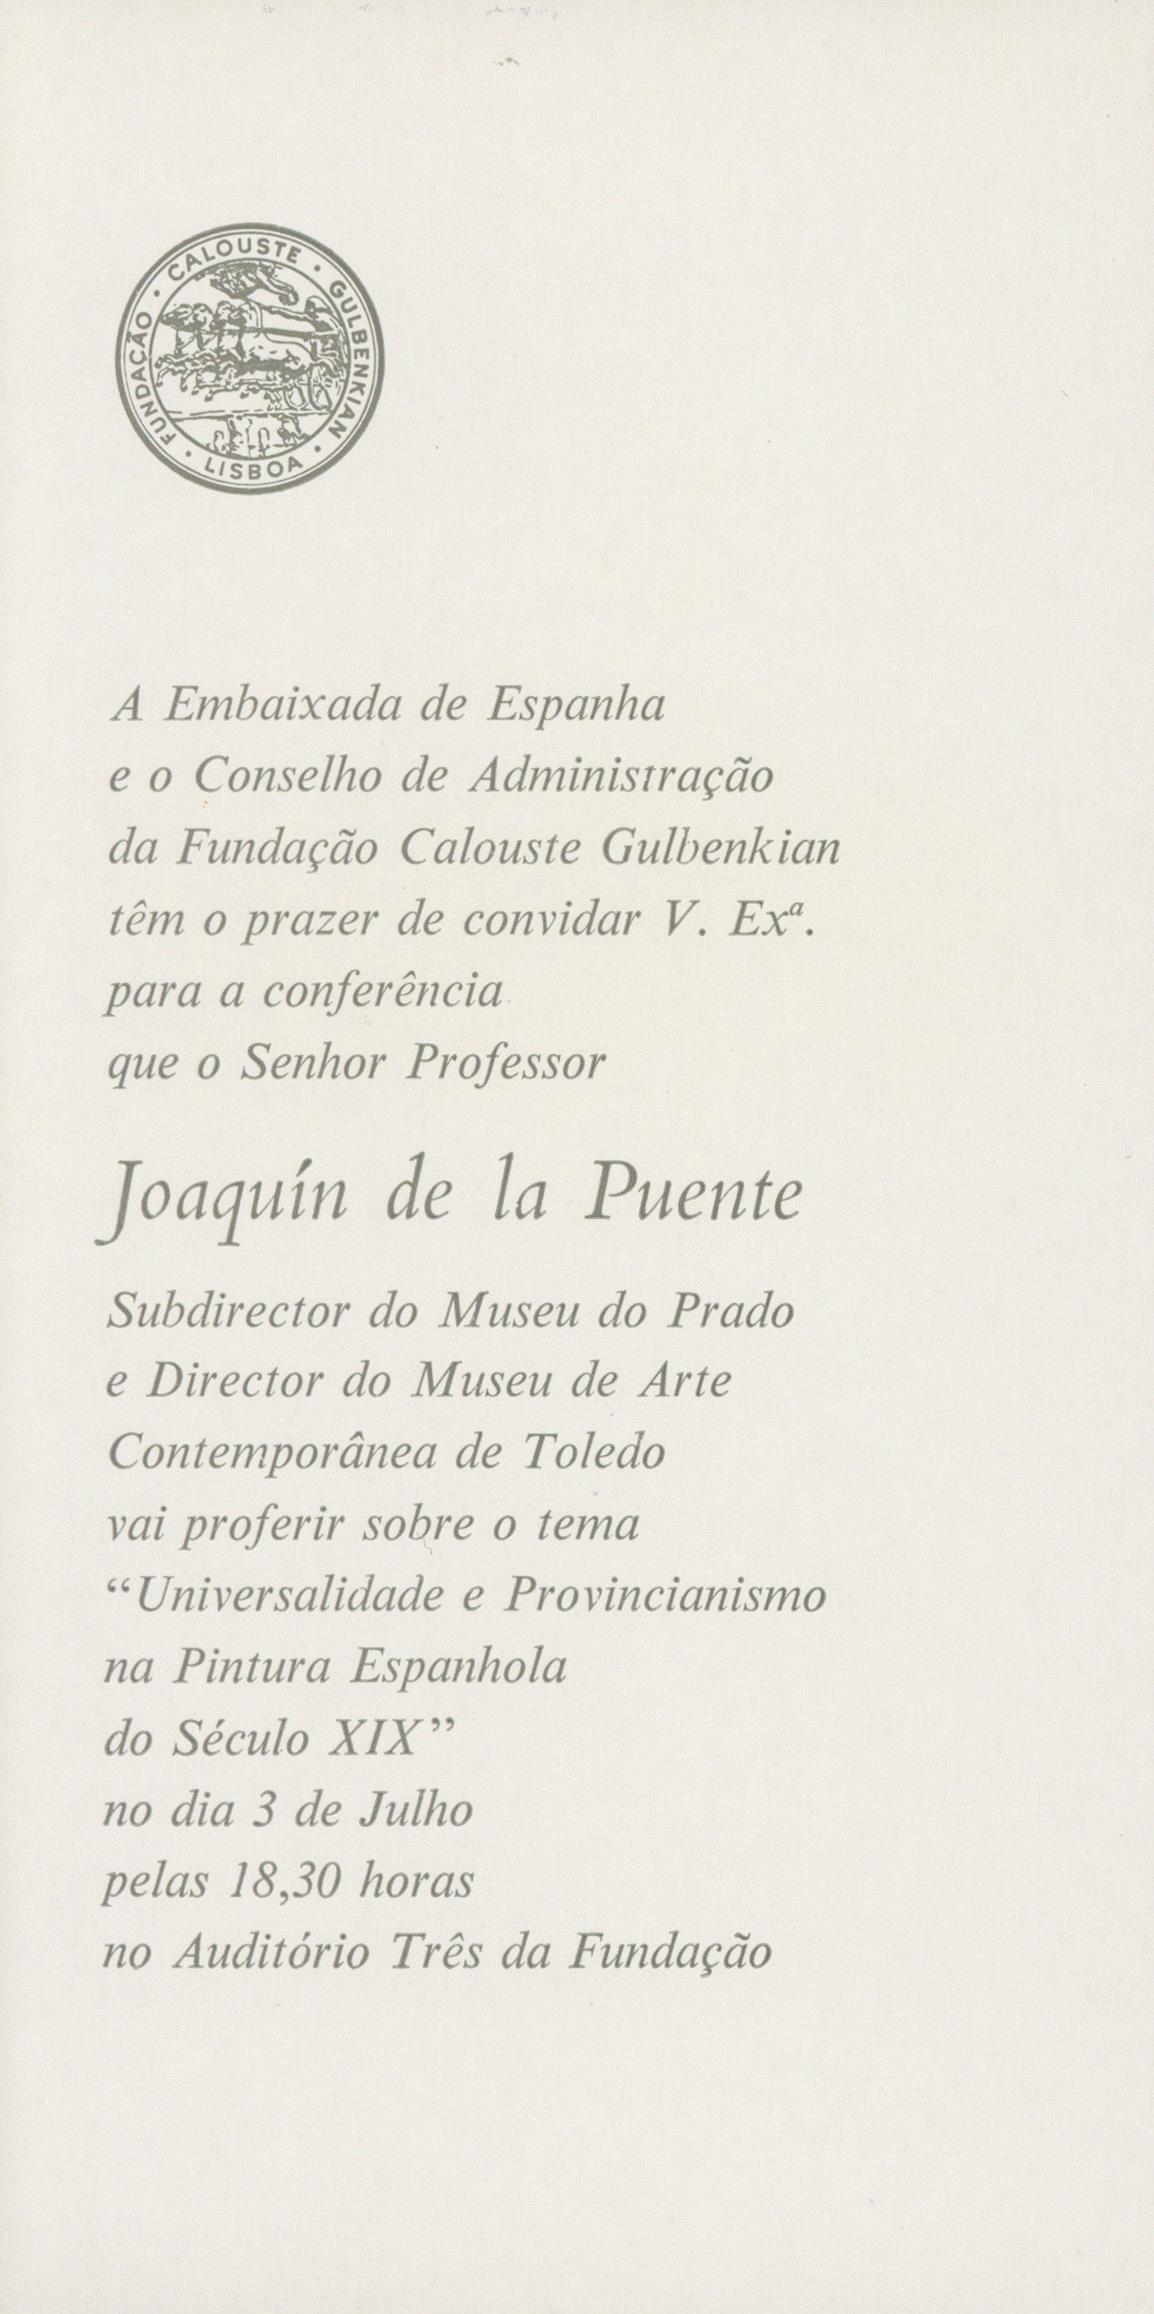 Universalidade e Provincianismo na Pintura Espanhola do Século XIX [conferência por Joaquin de la Puente]